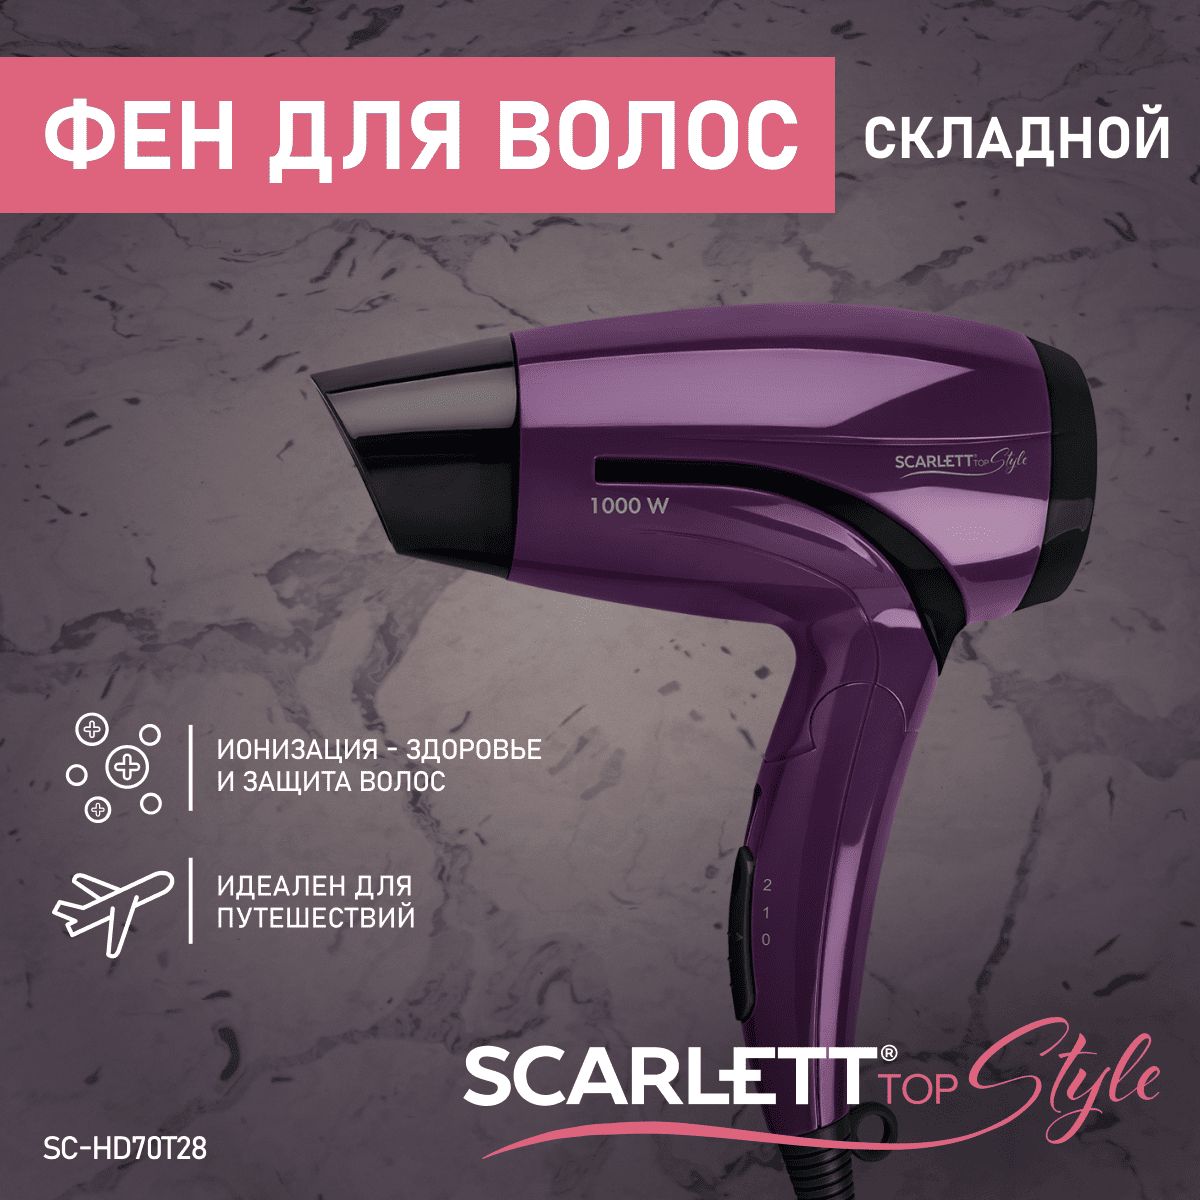 Фен Scarlett SC-HD70T28 1200 Вт фиолетовый фен щетка scarlett sc has7400 800 вт фиолетовый